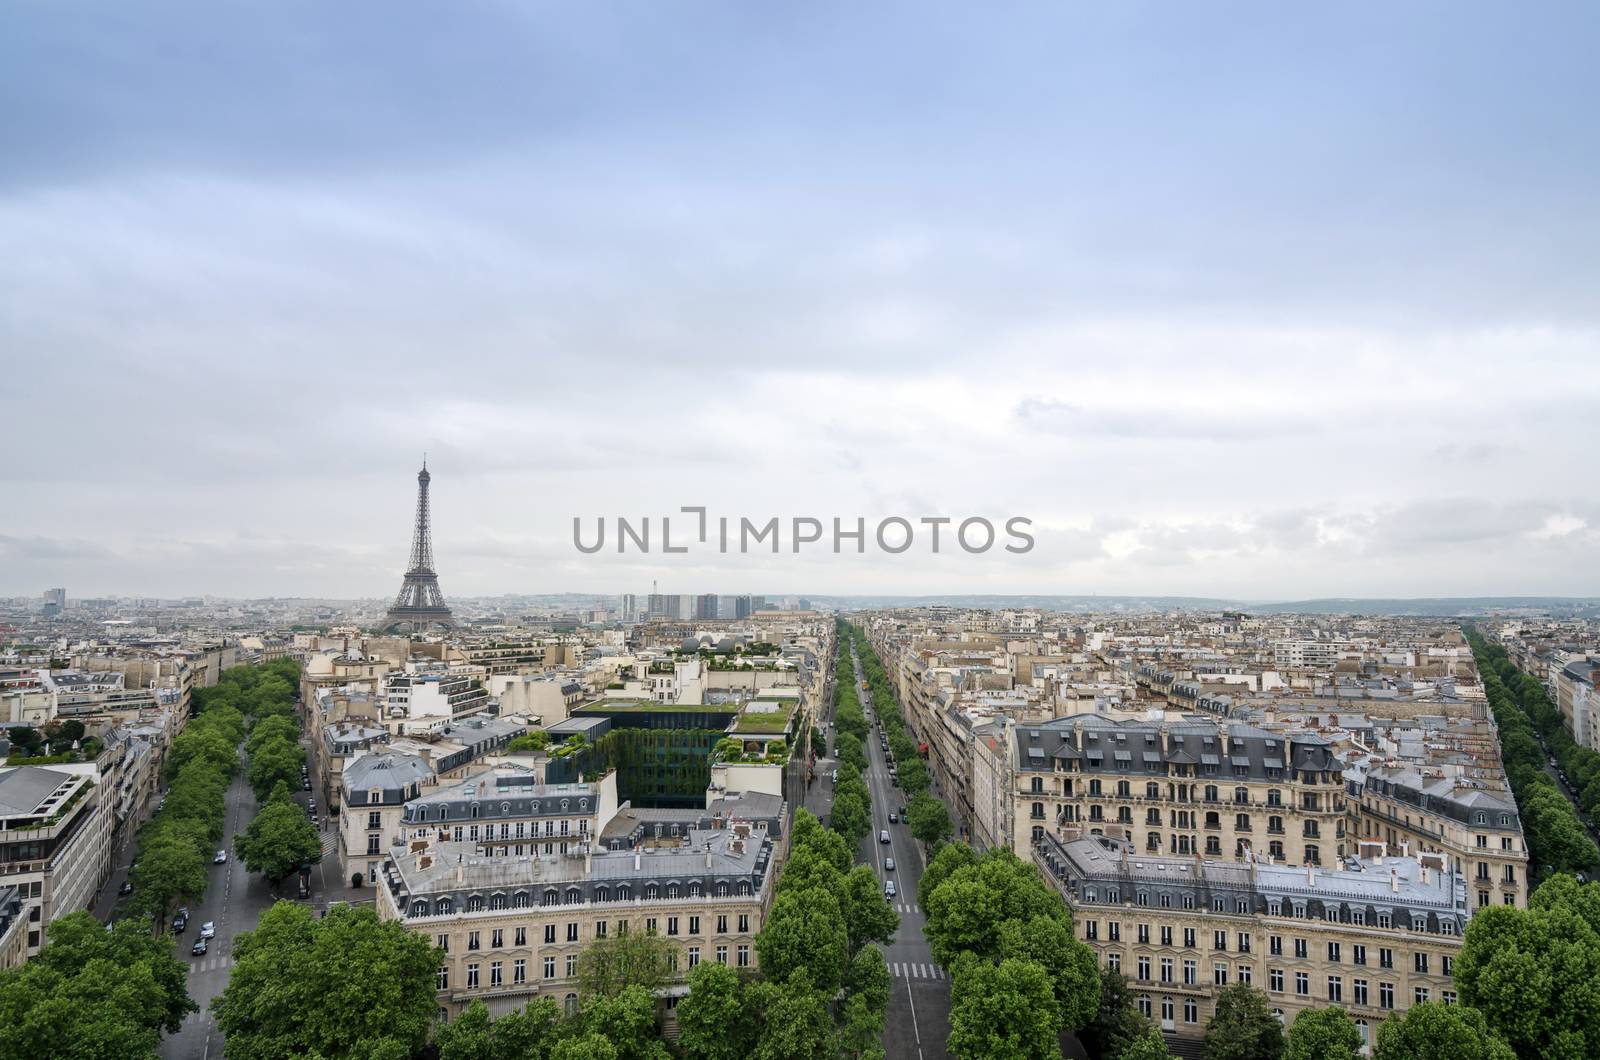 Paris skyline view from the Arc de Triomphe in Paris, France